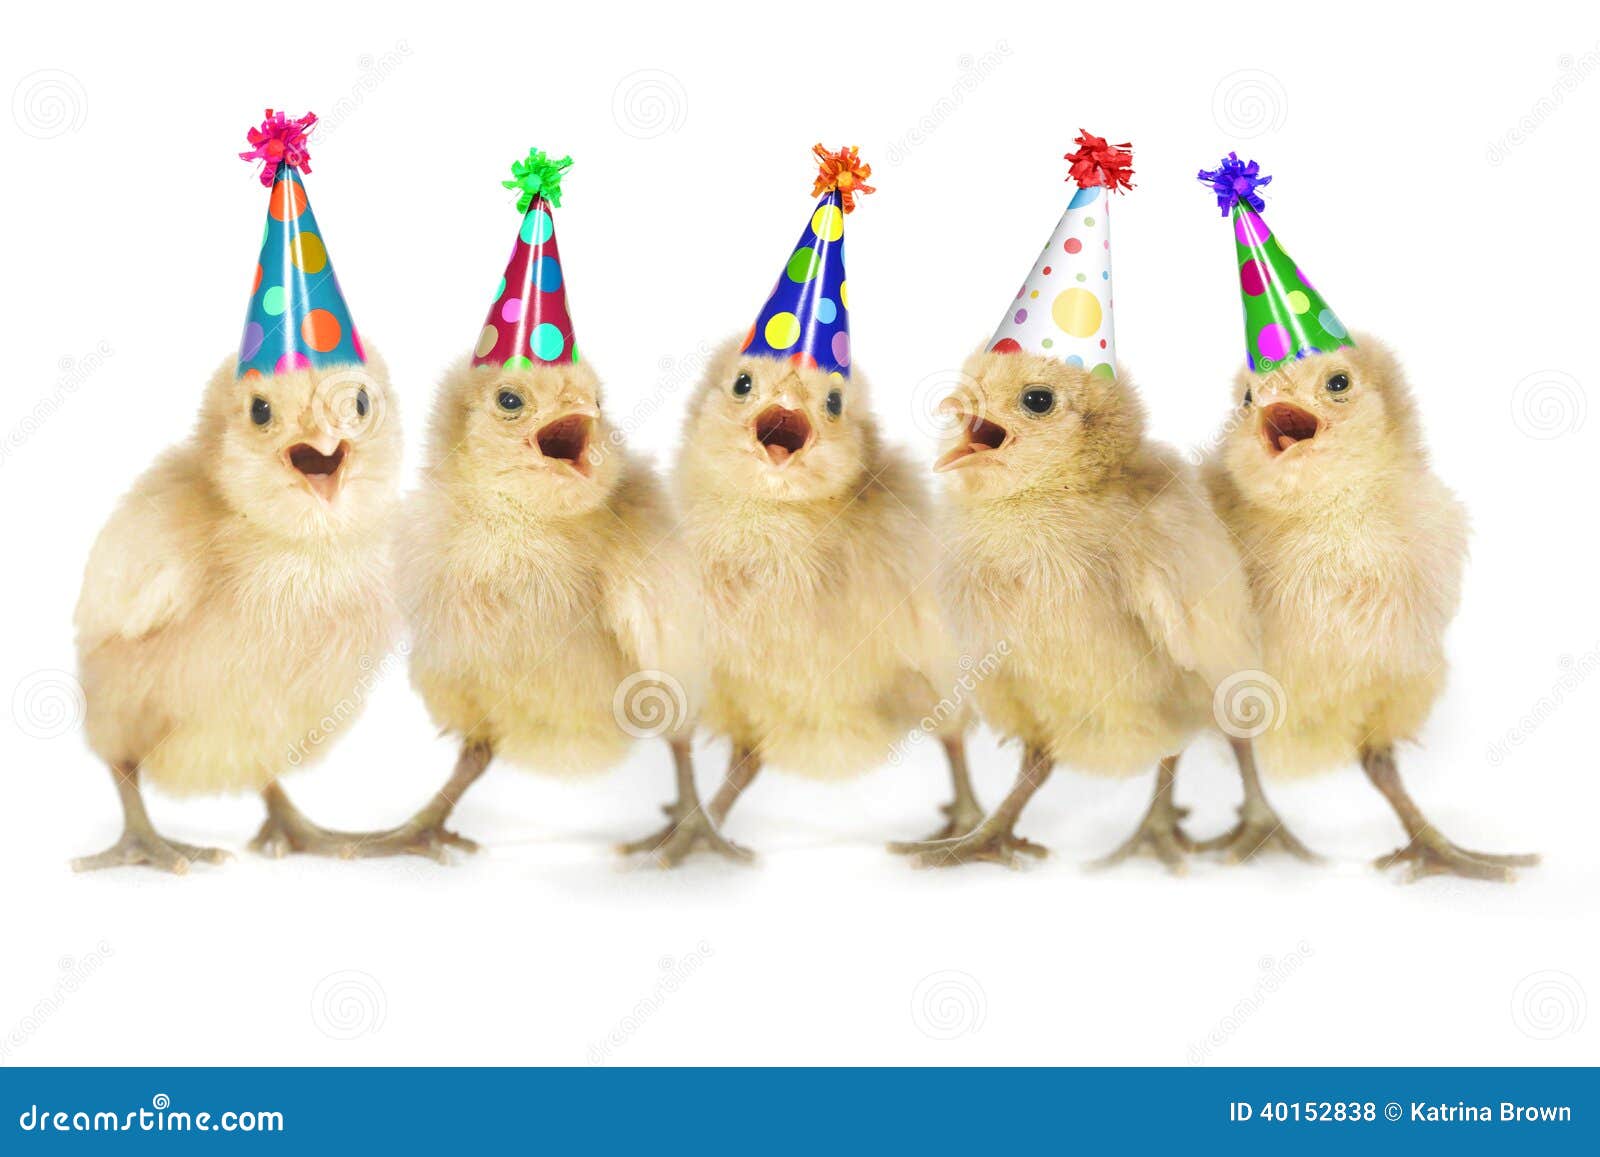 С днем рождения курица. С днем рождения цыпленок. Цыпленок в праздничном колпаке. Цыпленок поздравляет с днем рождения.